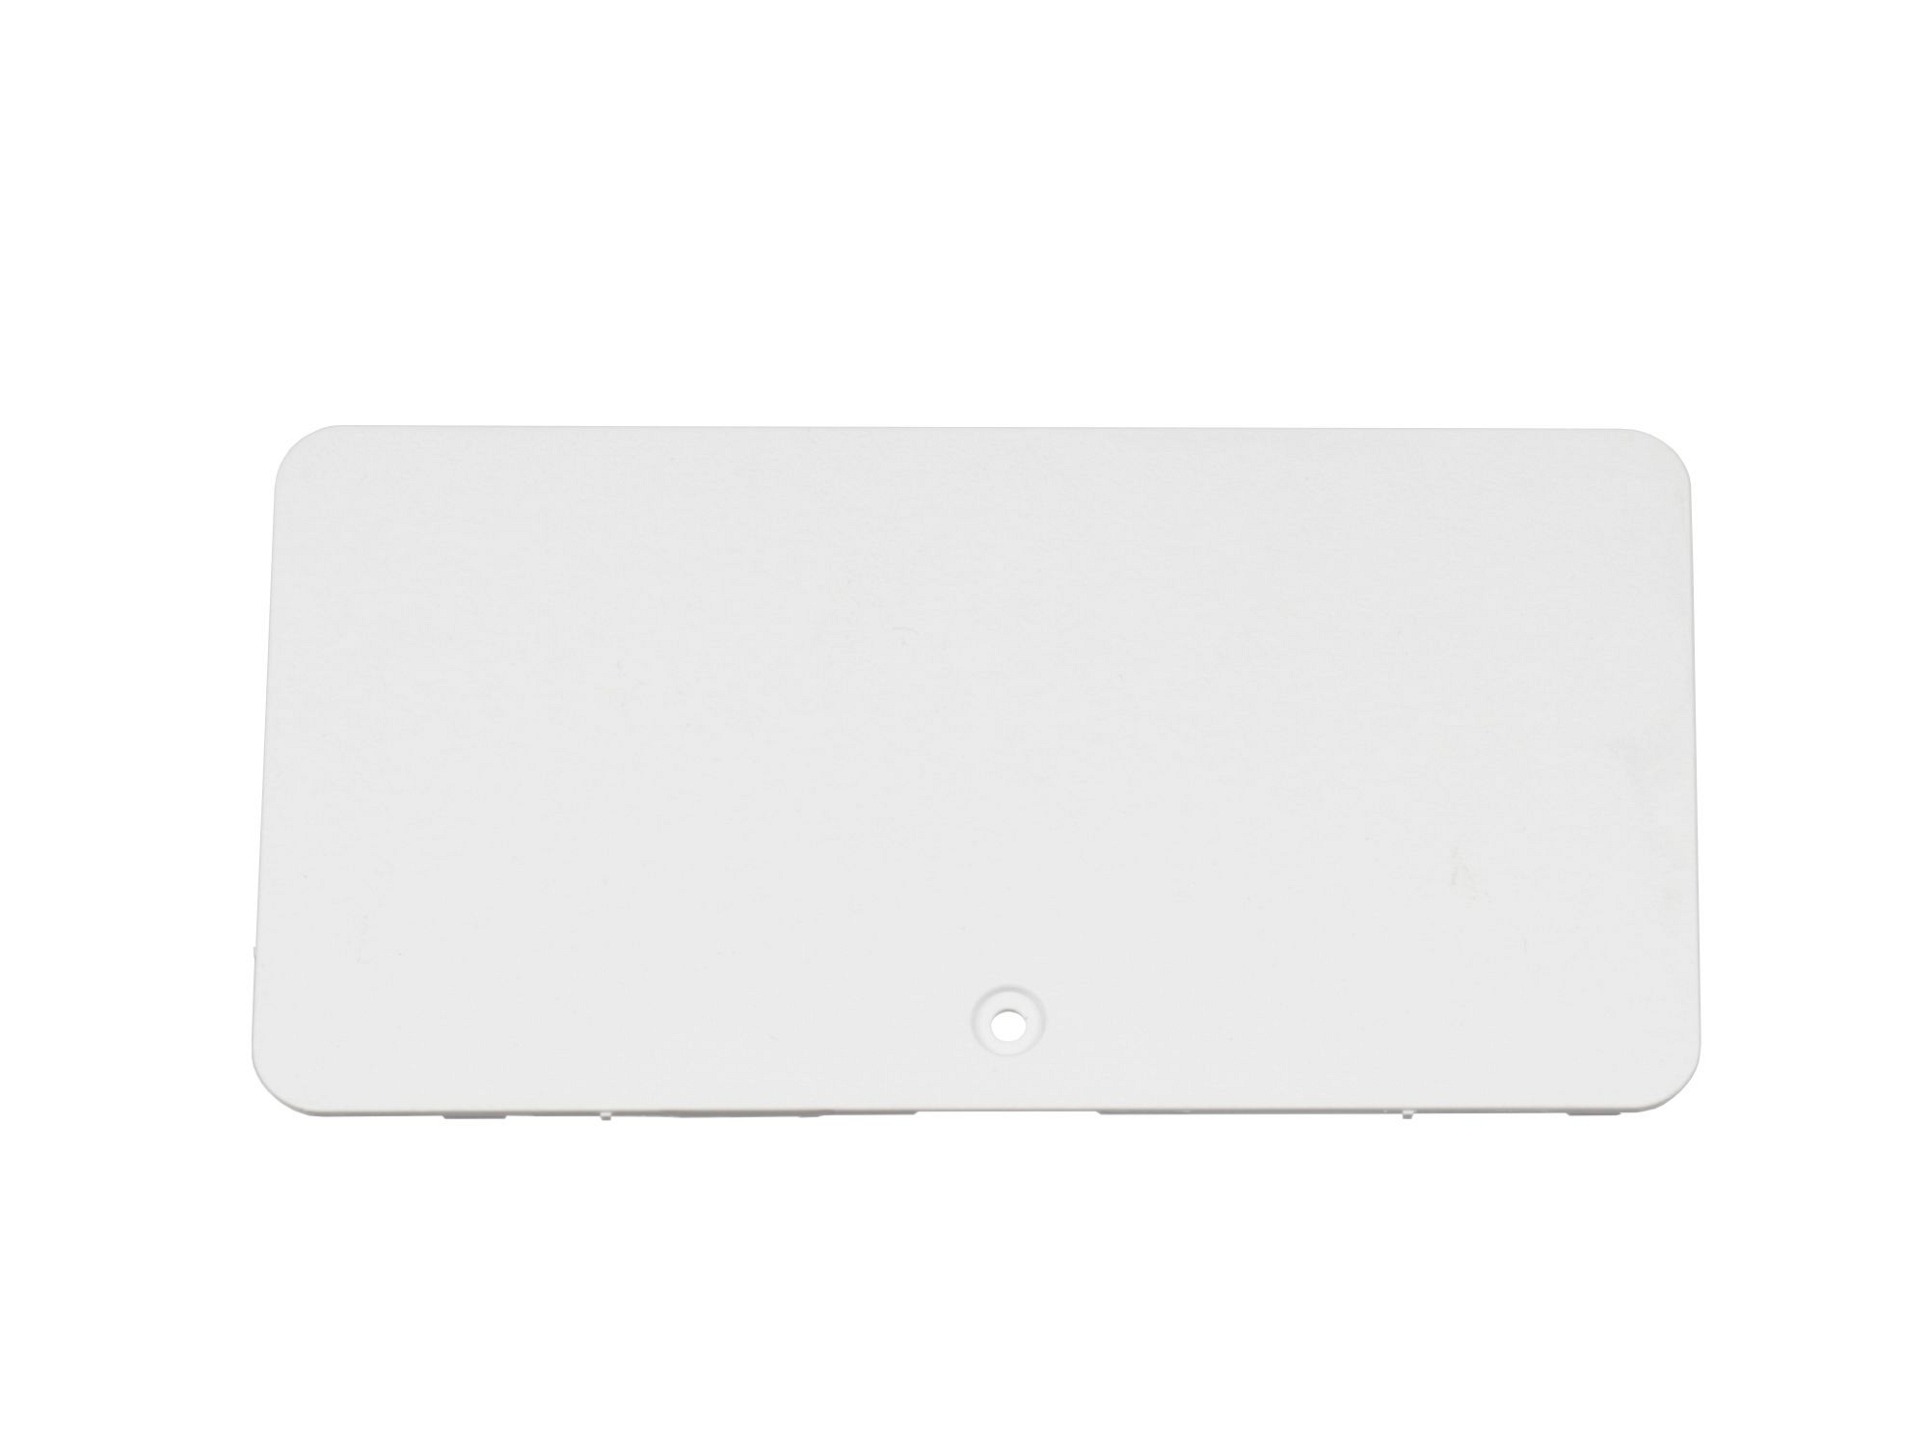 Asus VivoBook X556UB original Serviceschachtabdeckung weiß für RAM